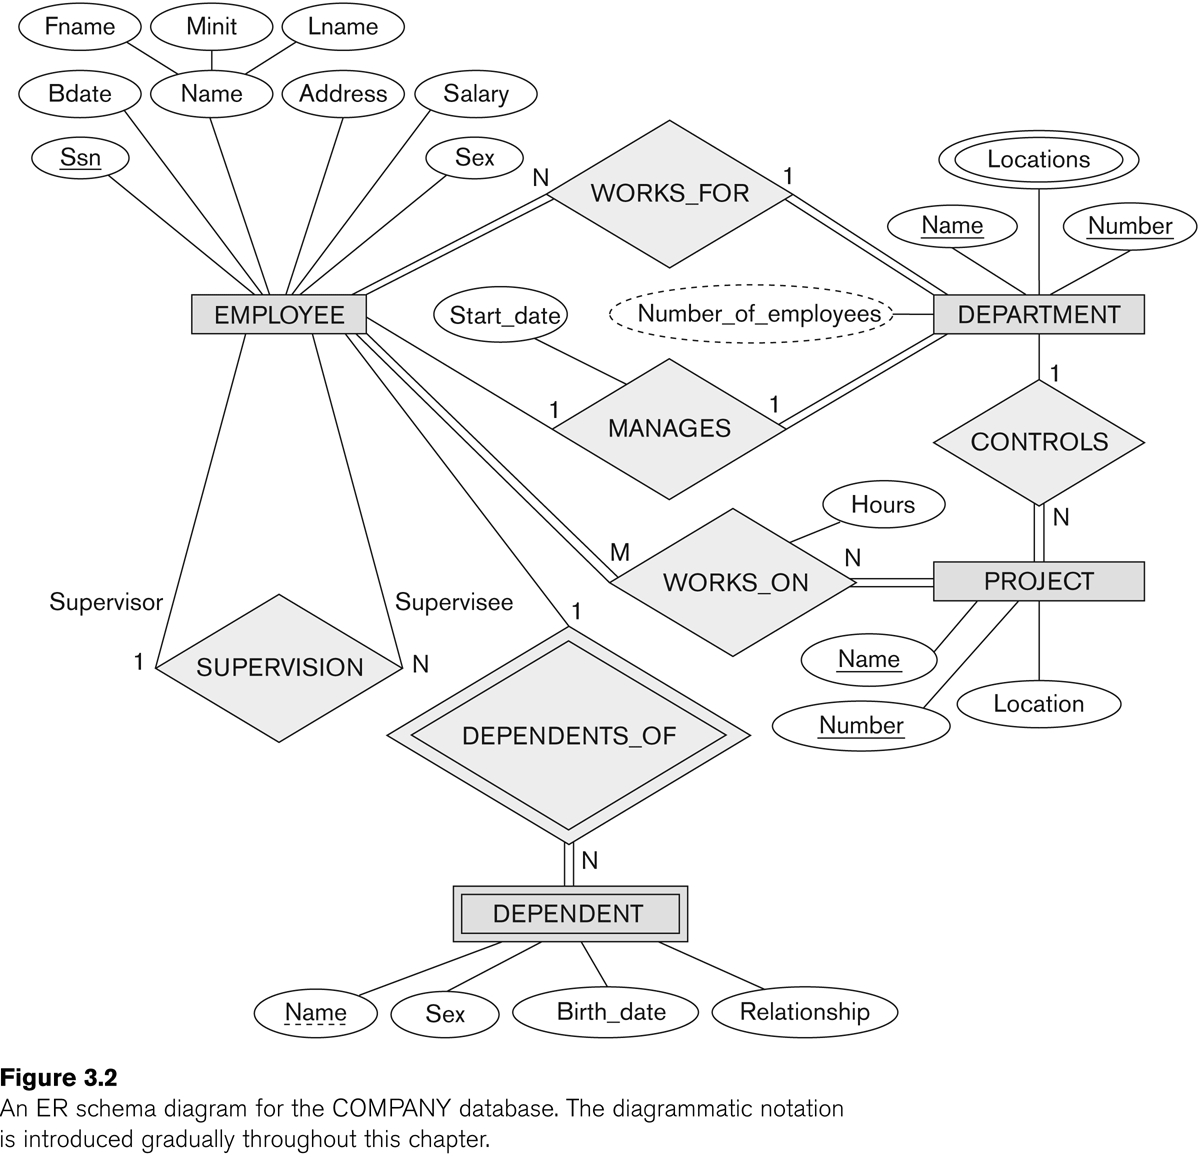 Entity-Relationship Modeling for Er Diagram Project